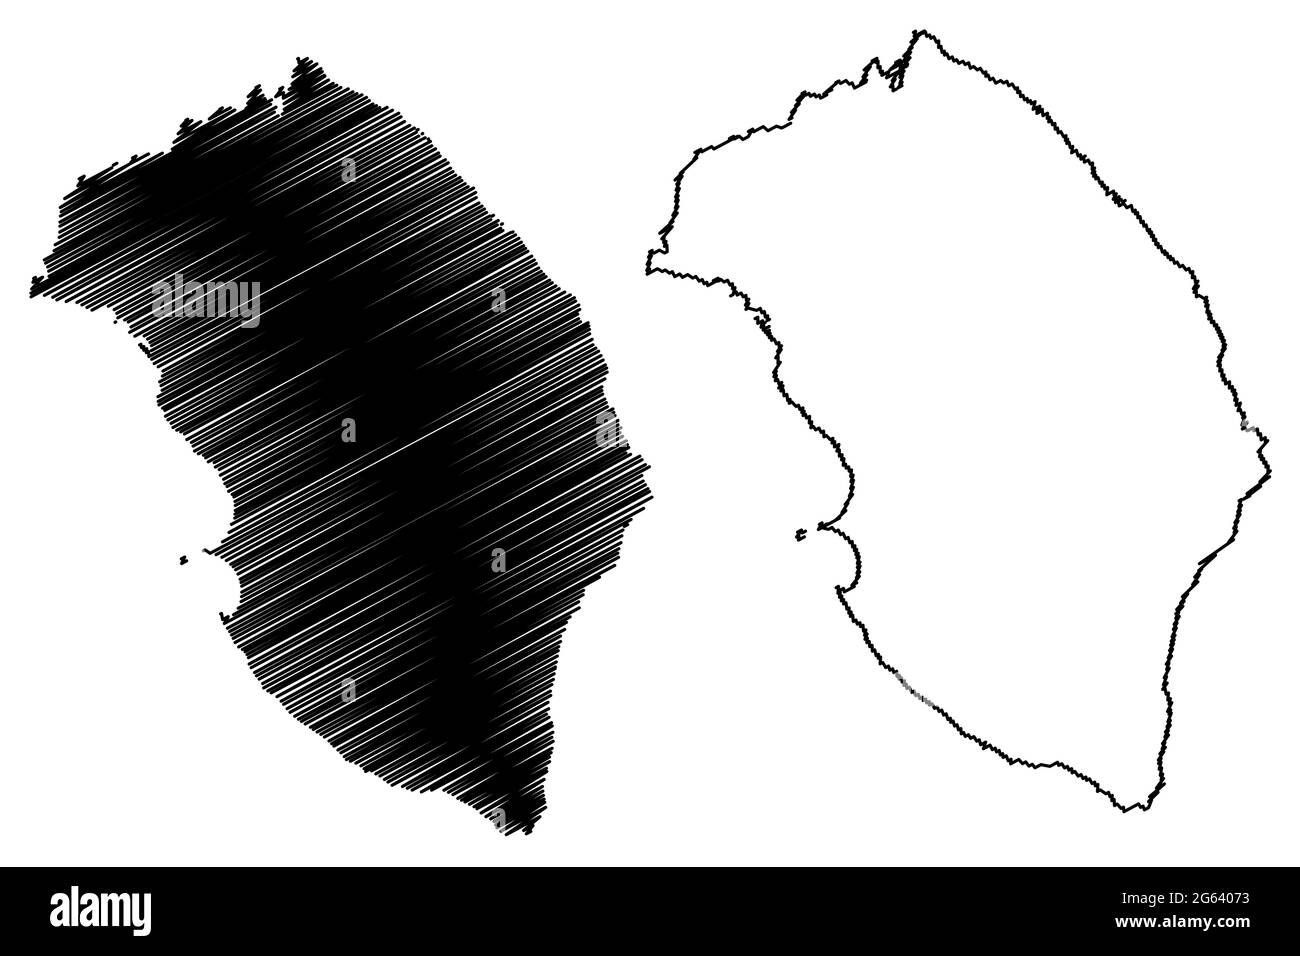 Provincia di Lecce (Italia, Repubblica Italiana, Regione Puglia) mappa illustrazione vettoriale, schizzo della mappa della provincia di Lecce Illustrazione Vettoriale